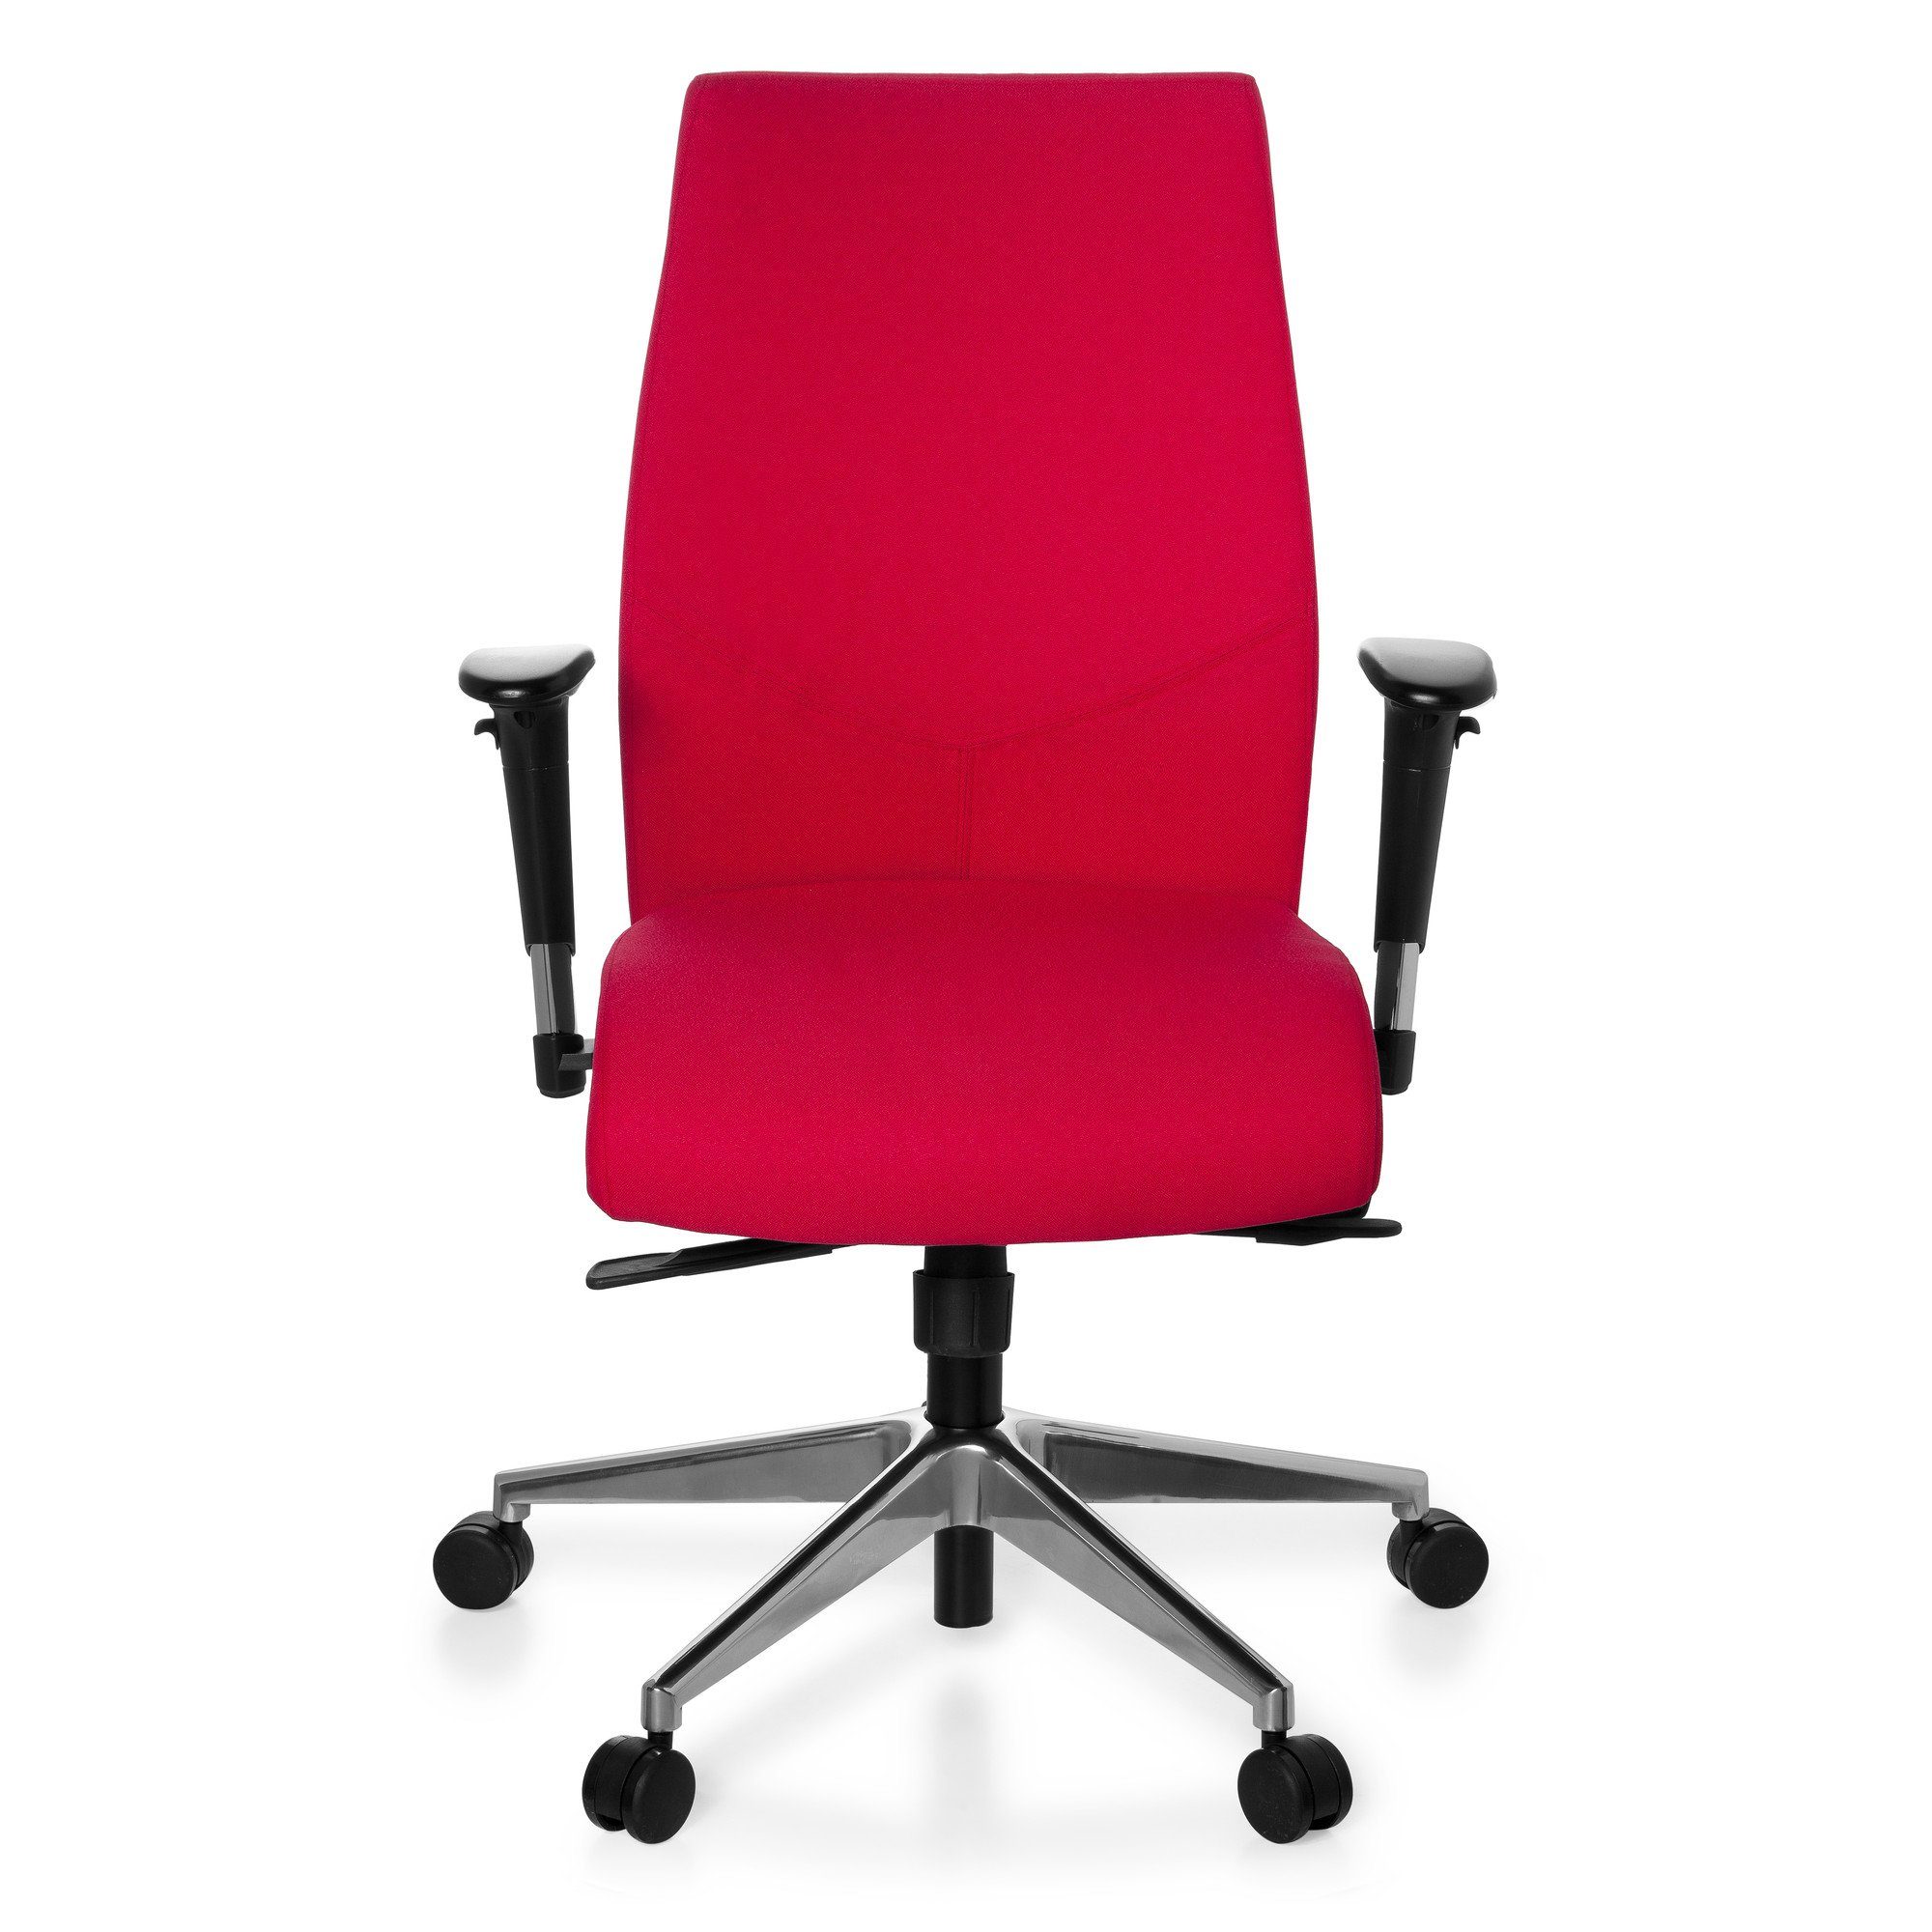 Verkaufspersonal hjh OFFICE Drehstuhl Rot PRO-TEC ergonomisch Bürostuhl Profi St), Schreibtischstuhl 250 Stoff (1